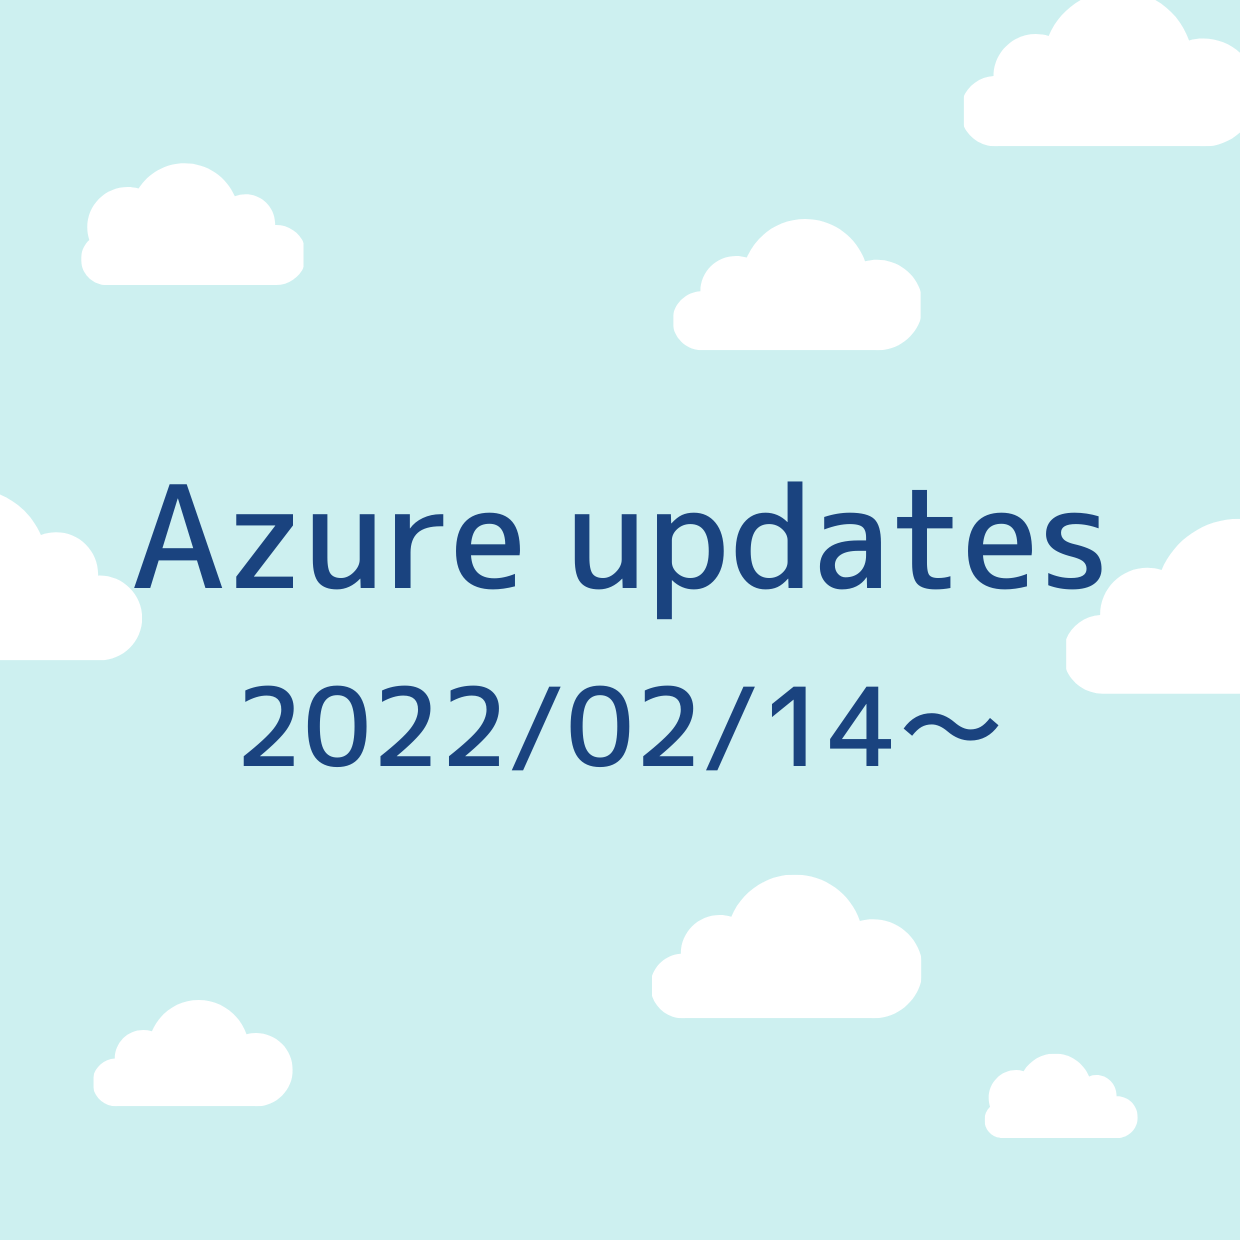 2022/02/14 週の Azure updates 日本語速報